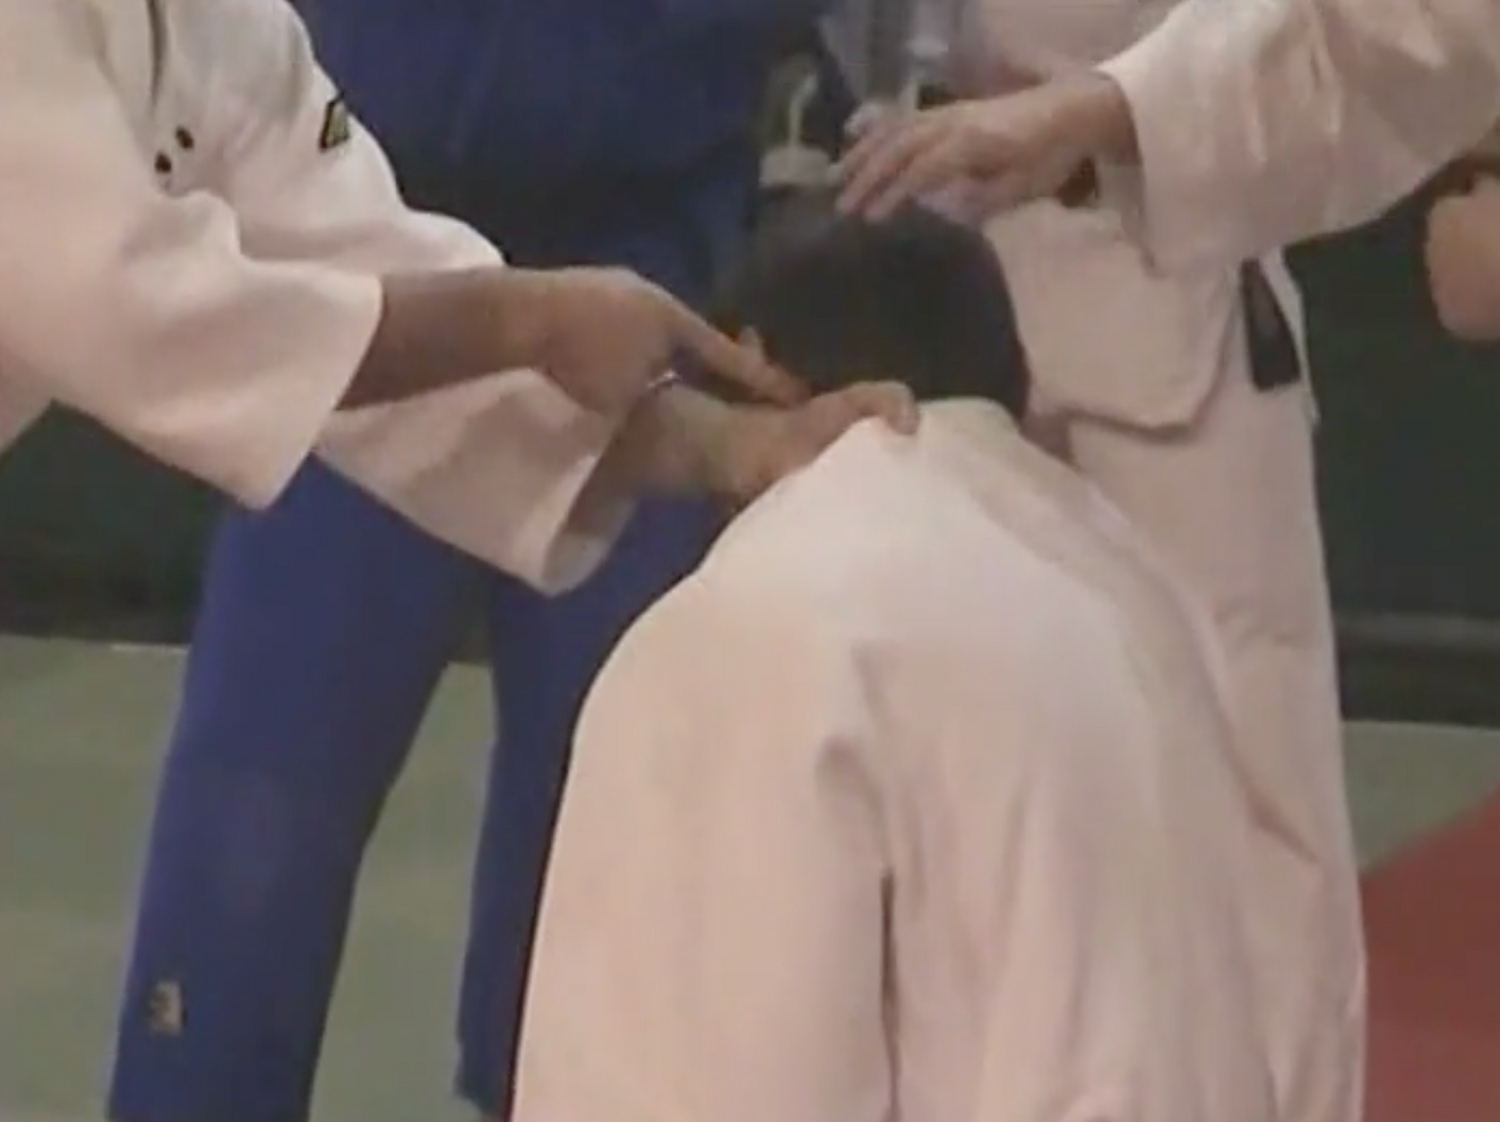 Judo Sacrifice lanza el DVD del seminario de Katsuhiko Kashiwazaki